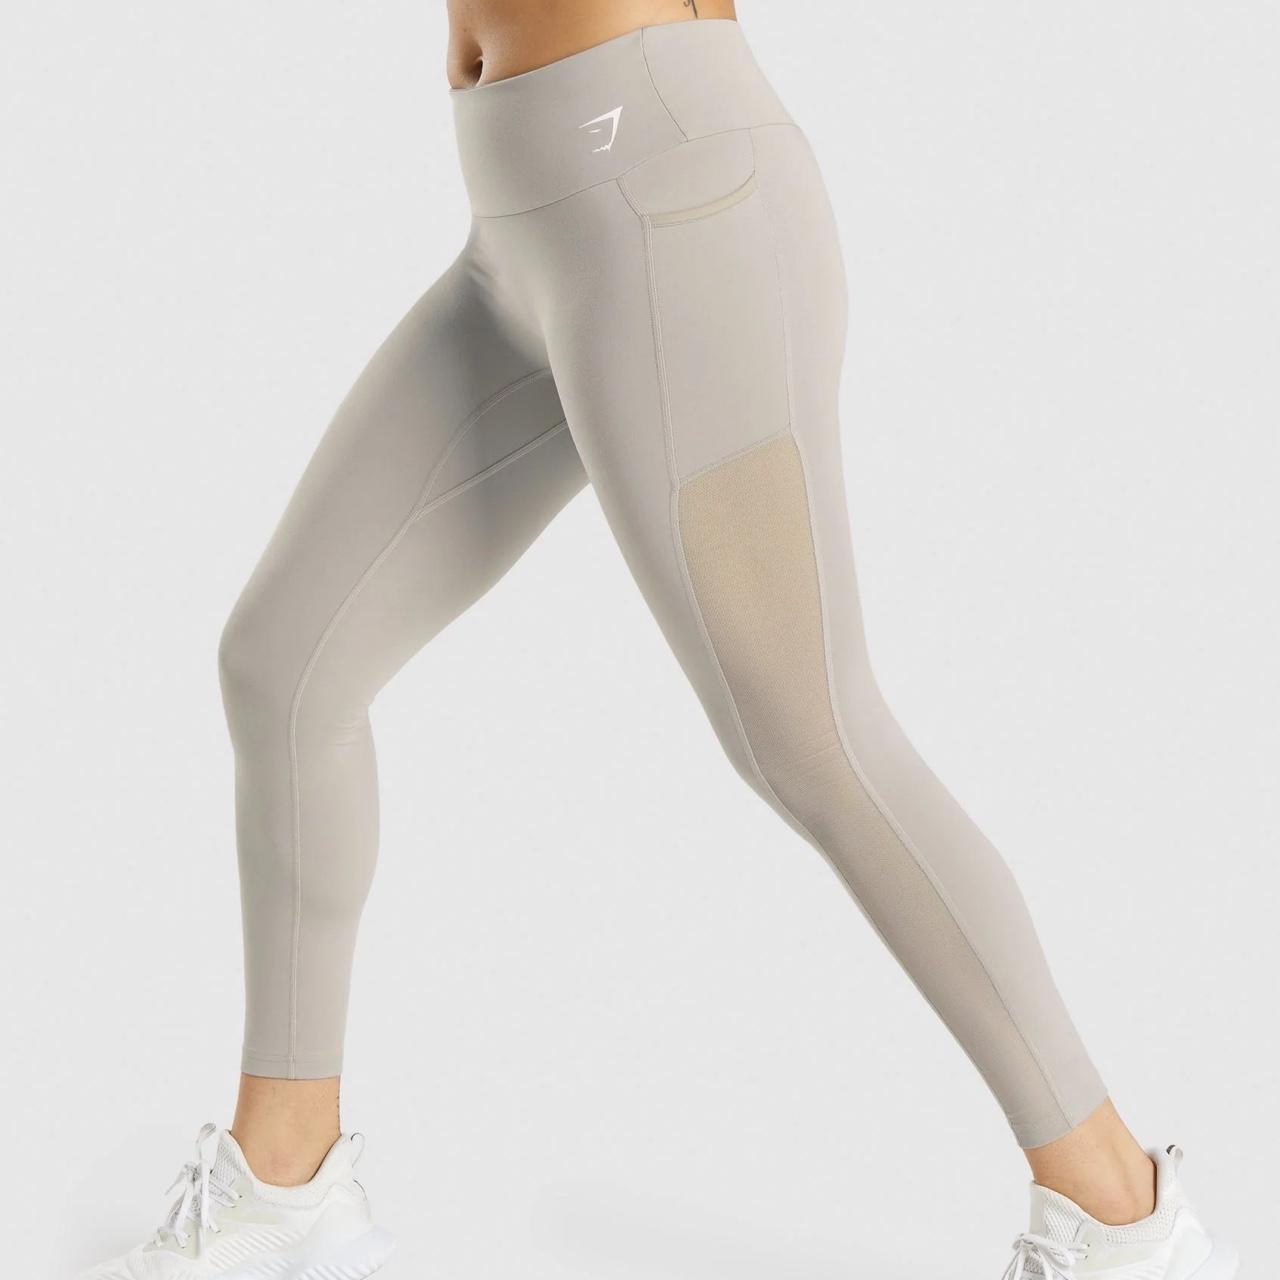 Gym shark mesh pocket leggings in beige/grey. - Depop